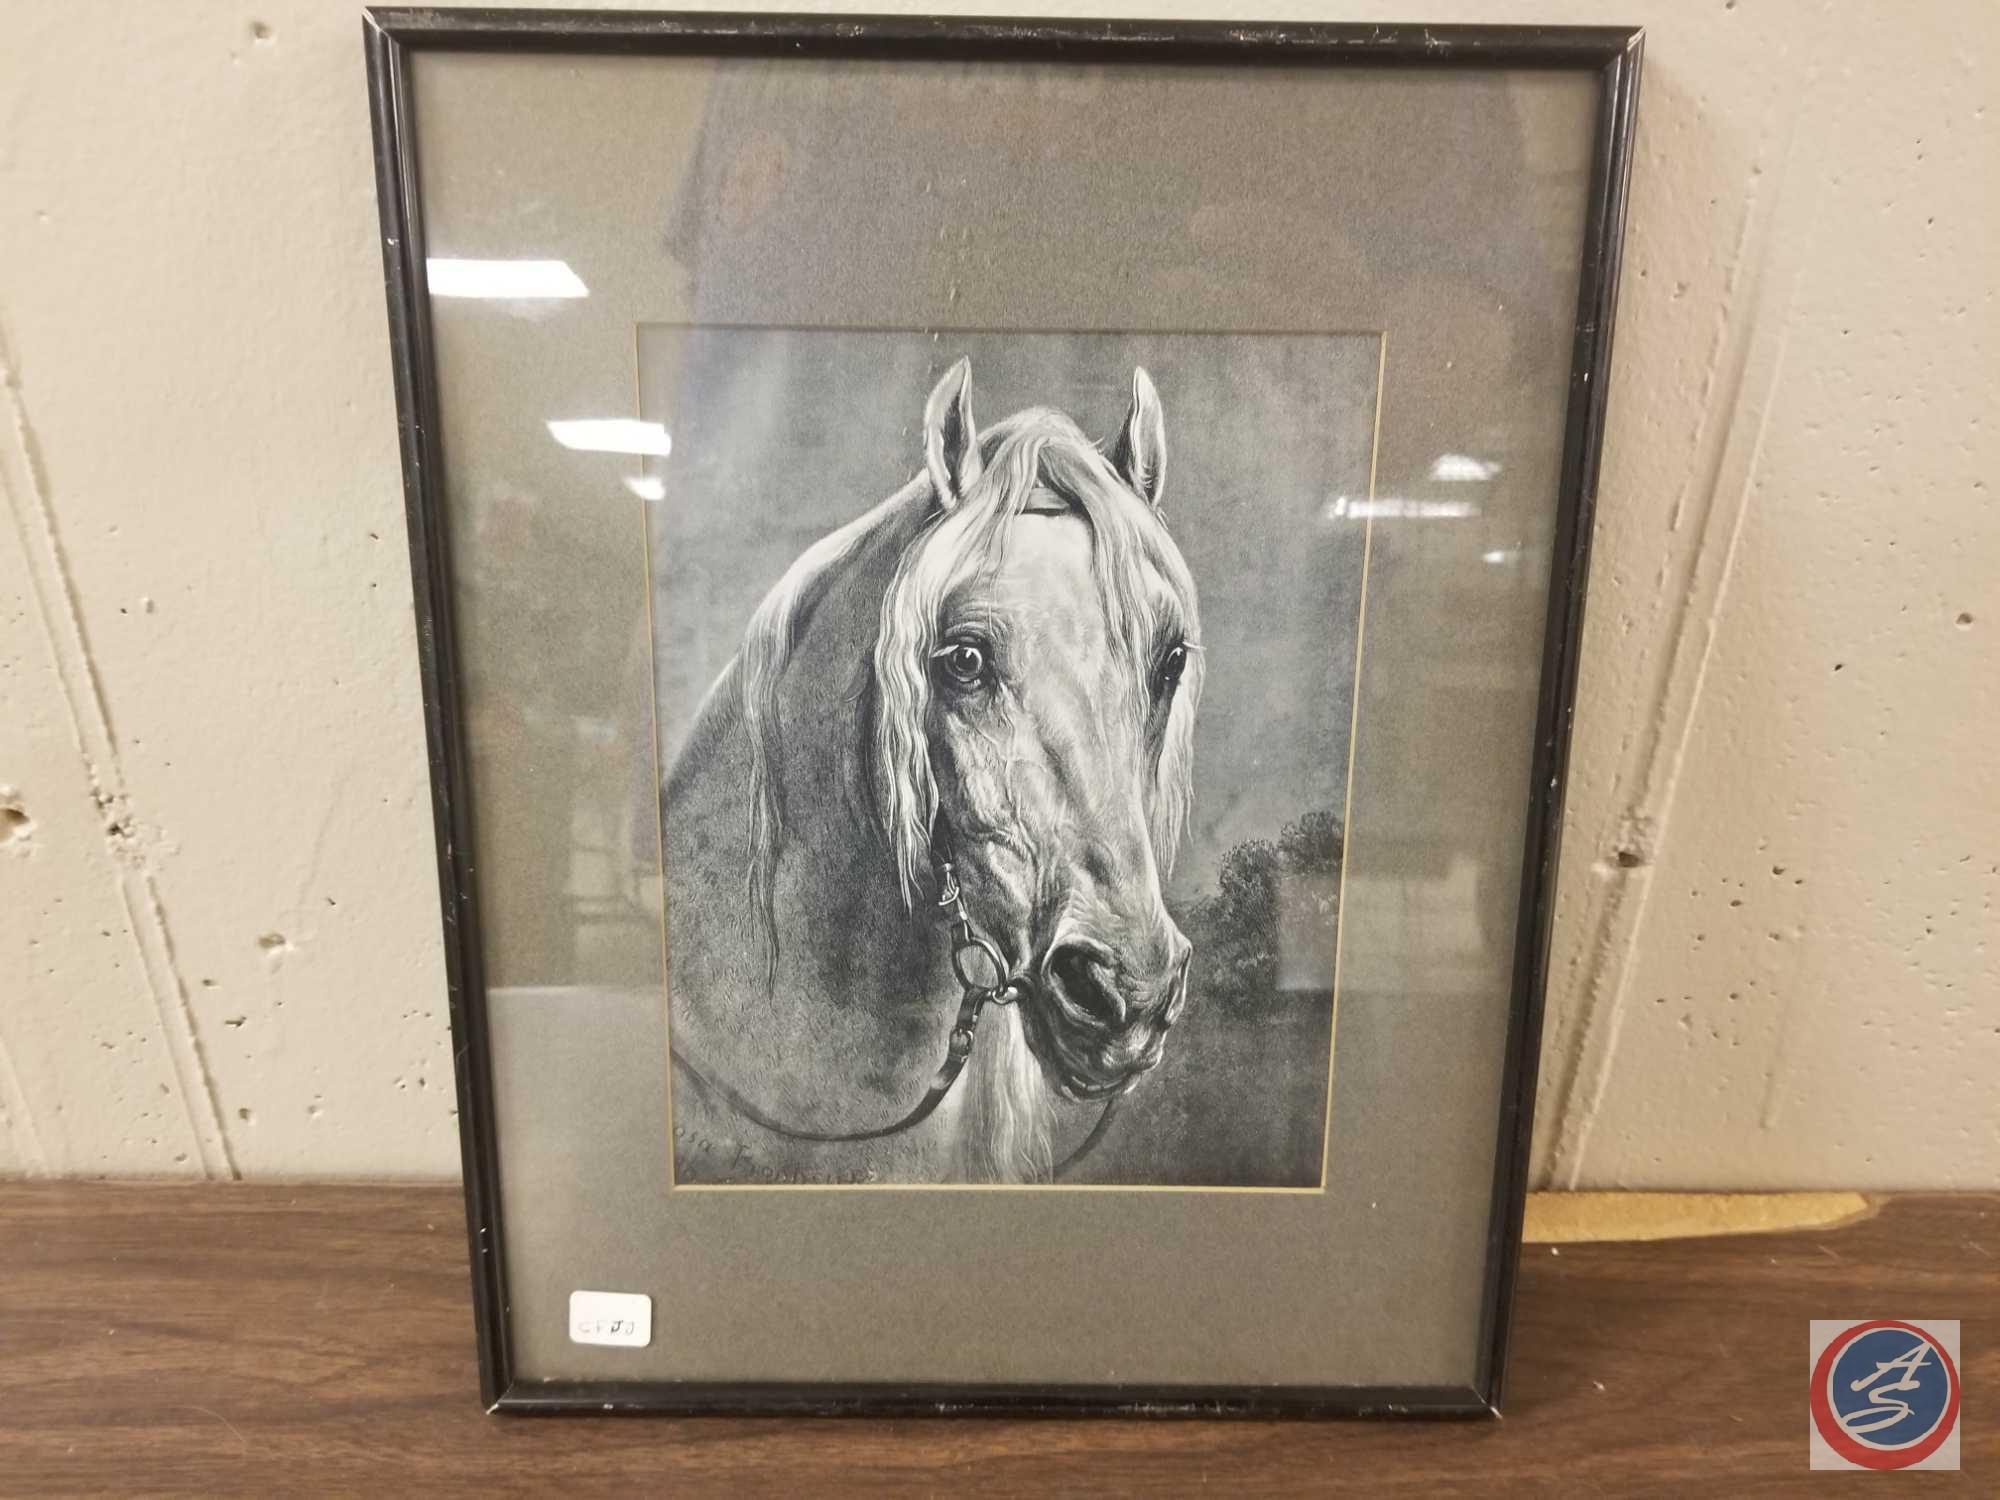 Framed Prairie Horses Artwork Measuring 13'' X 16'' and Framed Single Prairie Horse Artwork